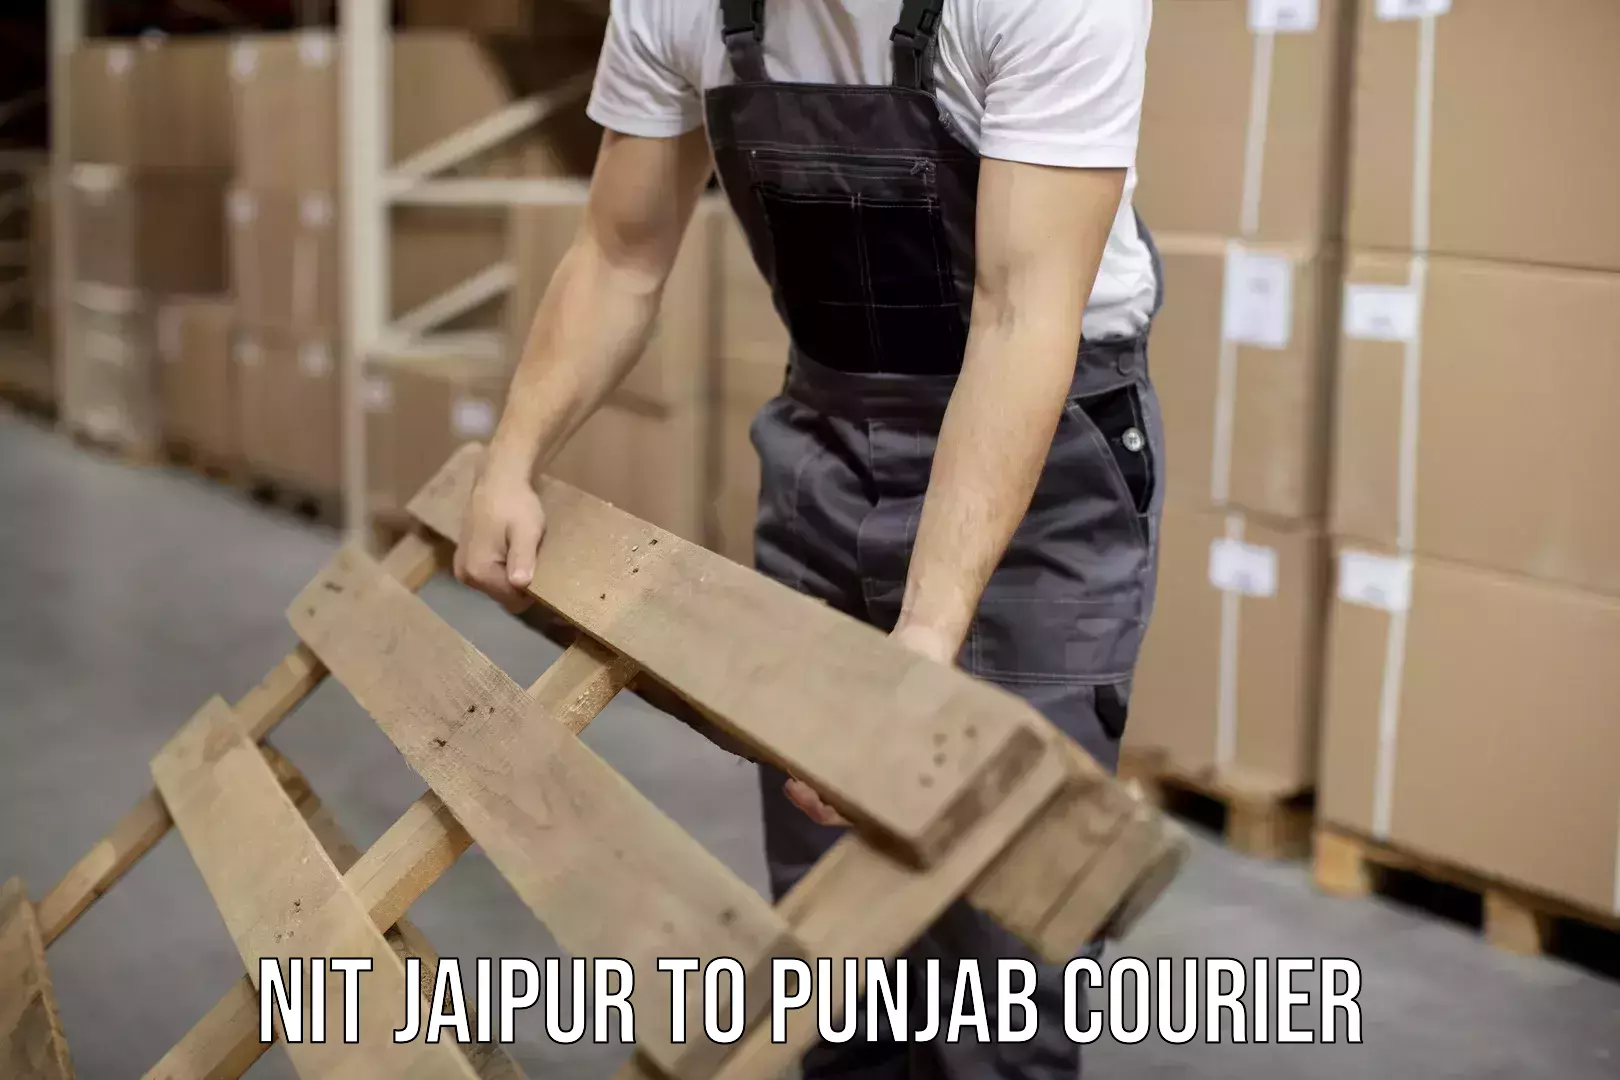 Special handling courier NIT Jaipur to Punjab